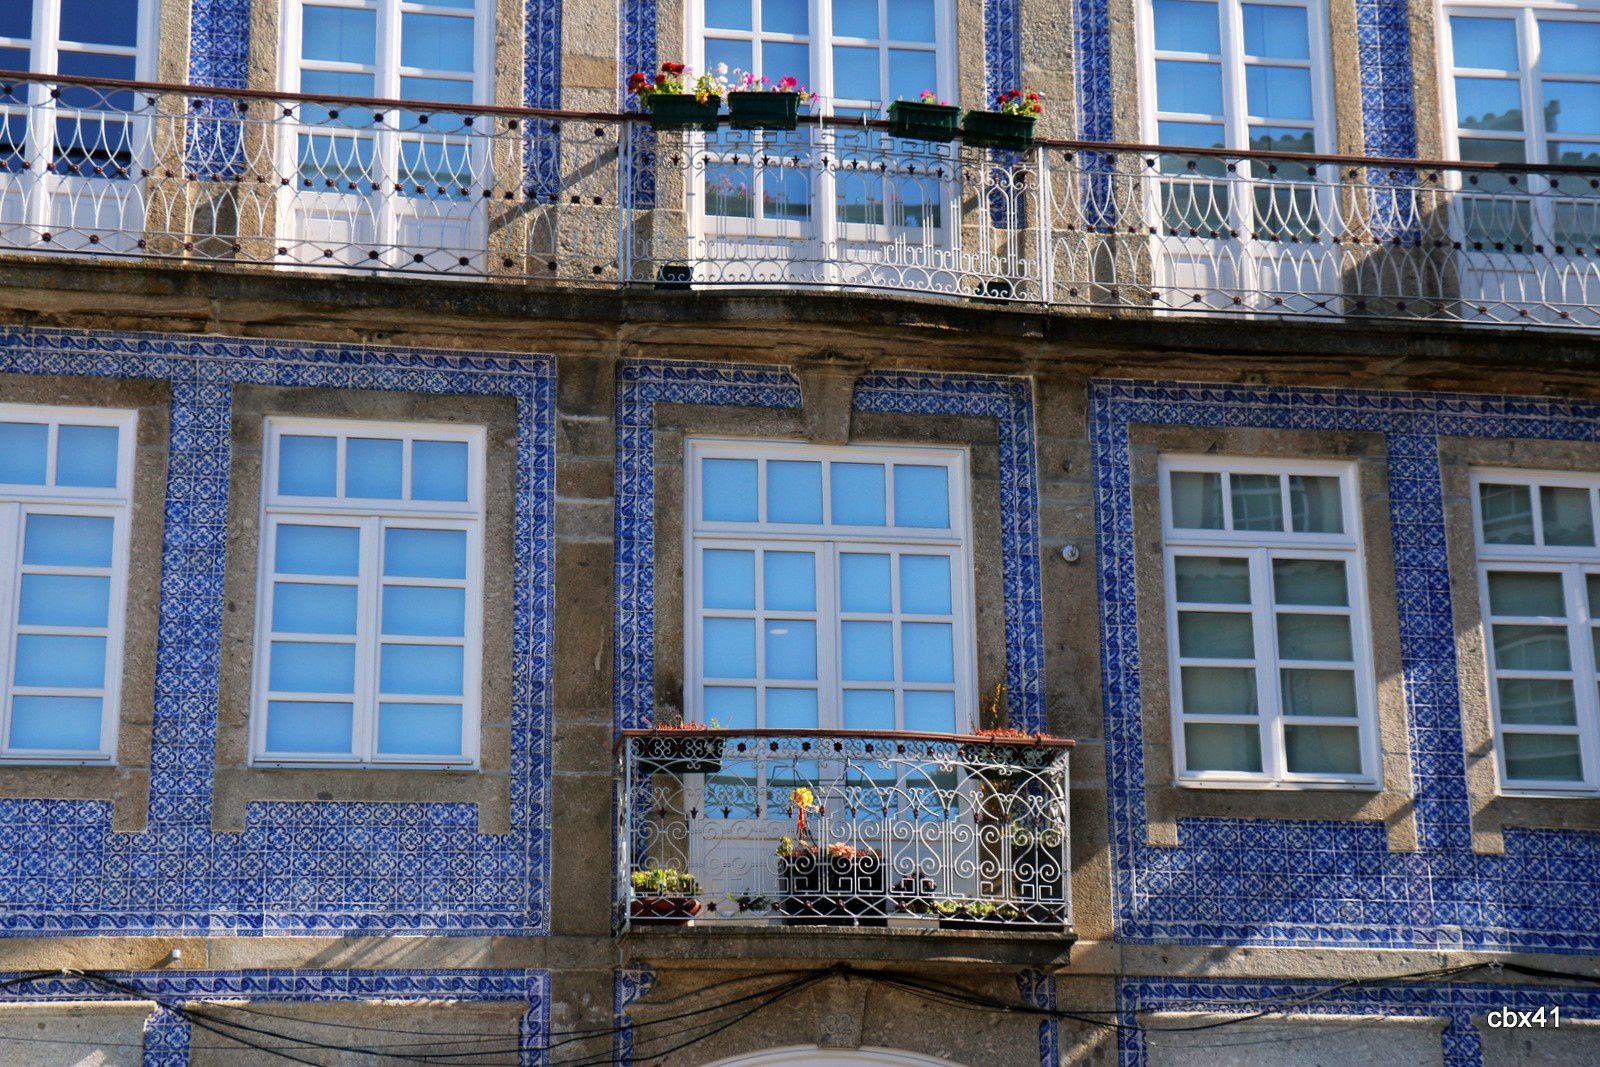  Porte d’entrée de la ville de Braga, Portugal